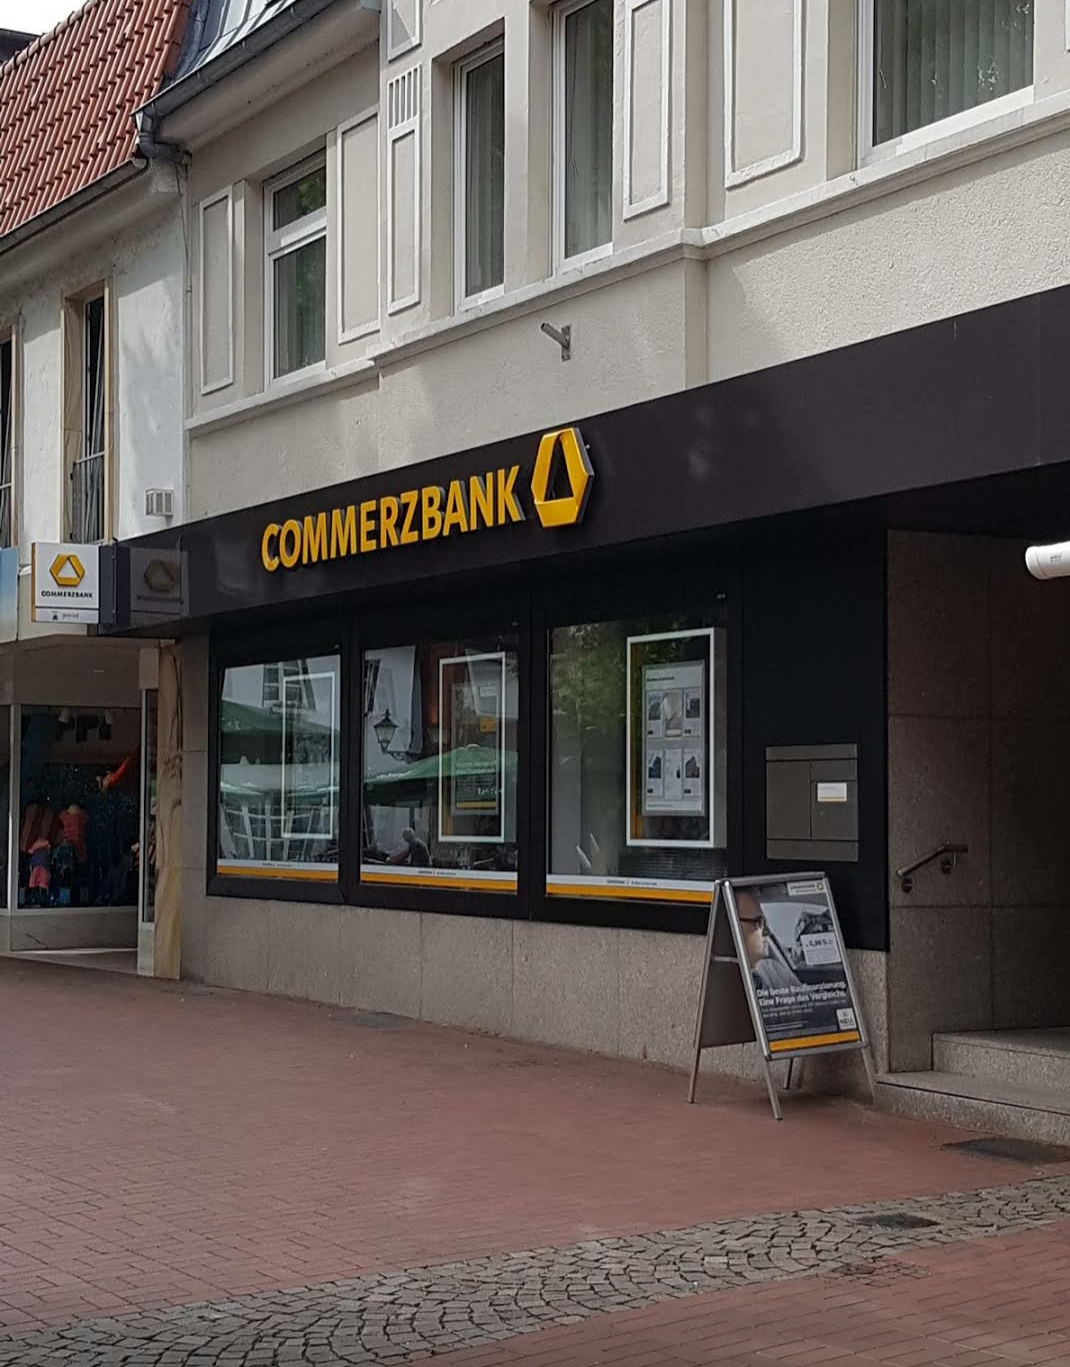 Commerzbank
59302 
Oelde